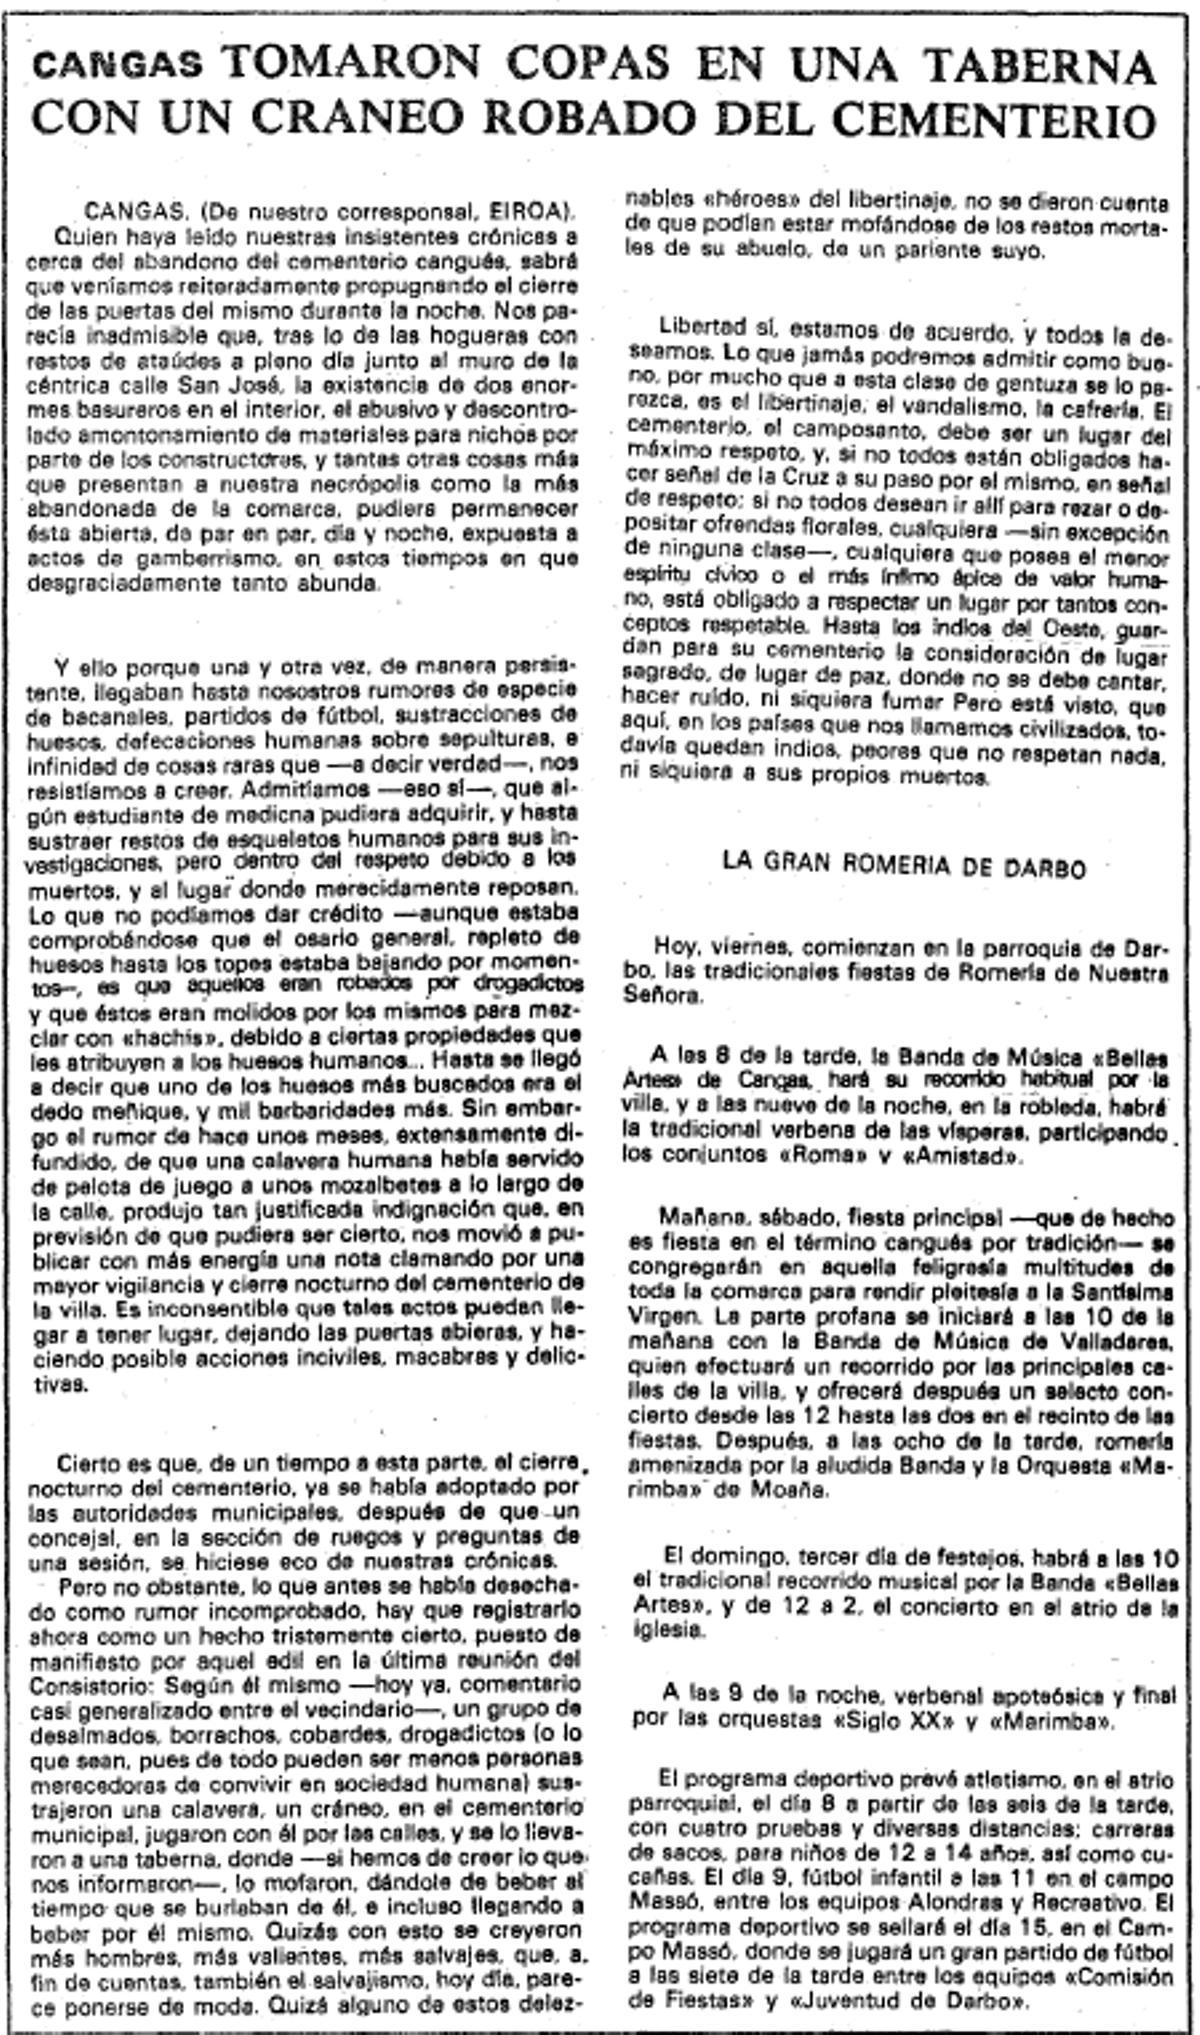 Noticia publicada en la página 23 de FARO DE VIGO el 7 de septiembre de 1979.